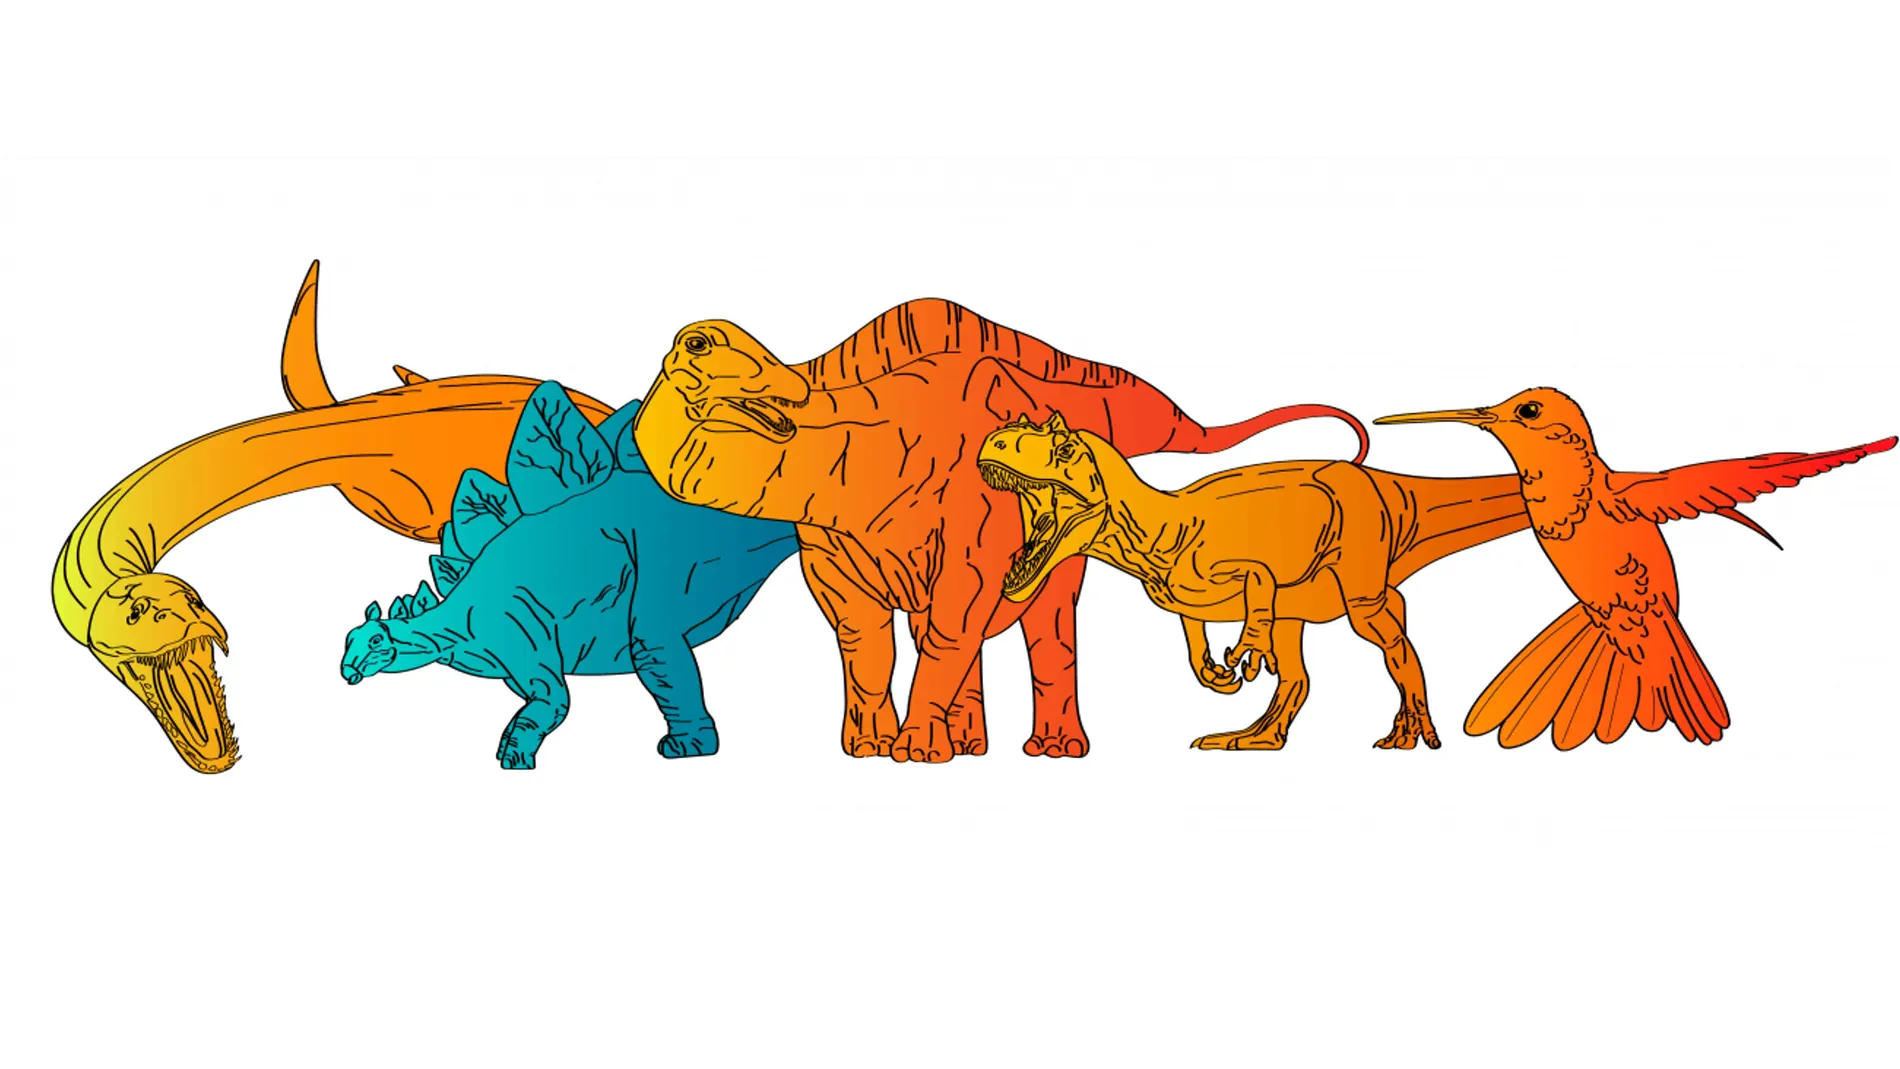 Representación de las tasas metabólicas de varios animales, de izquierda a derecha: un reptil marino, tres dinosaurios no avianos y un ave.